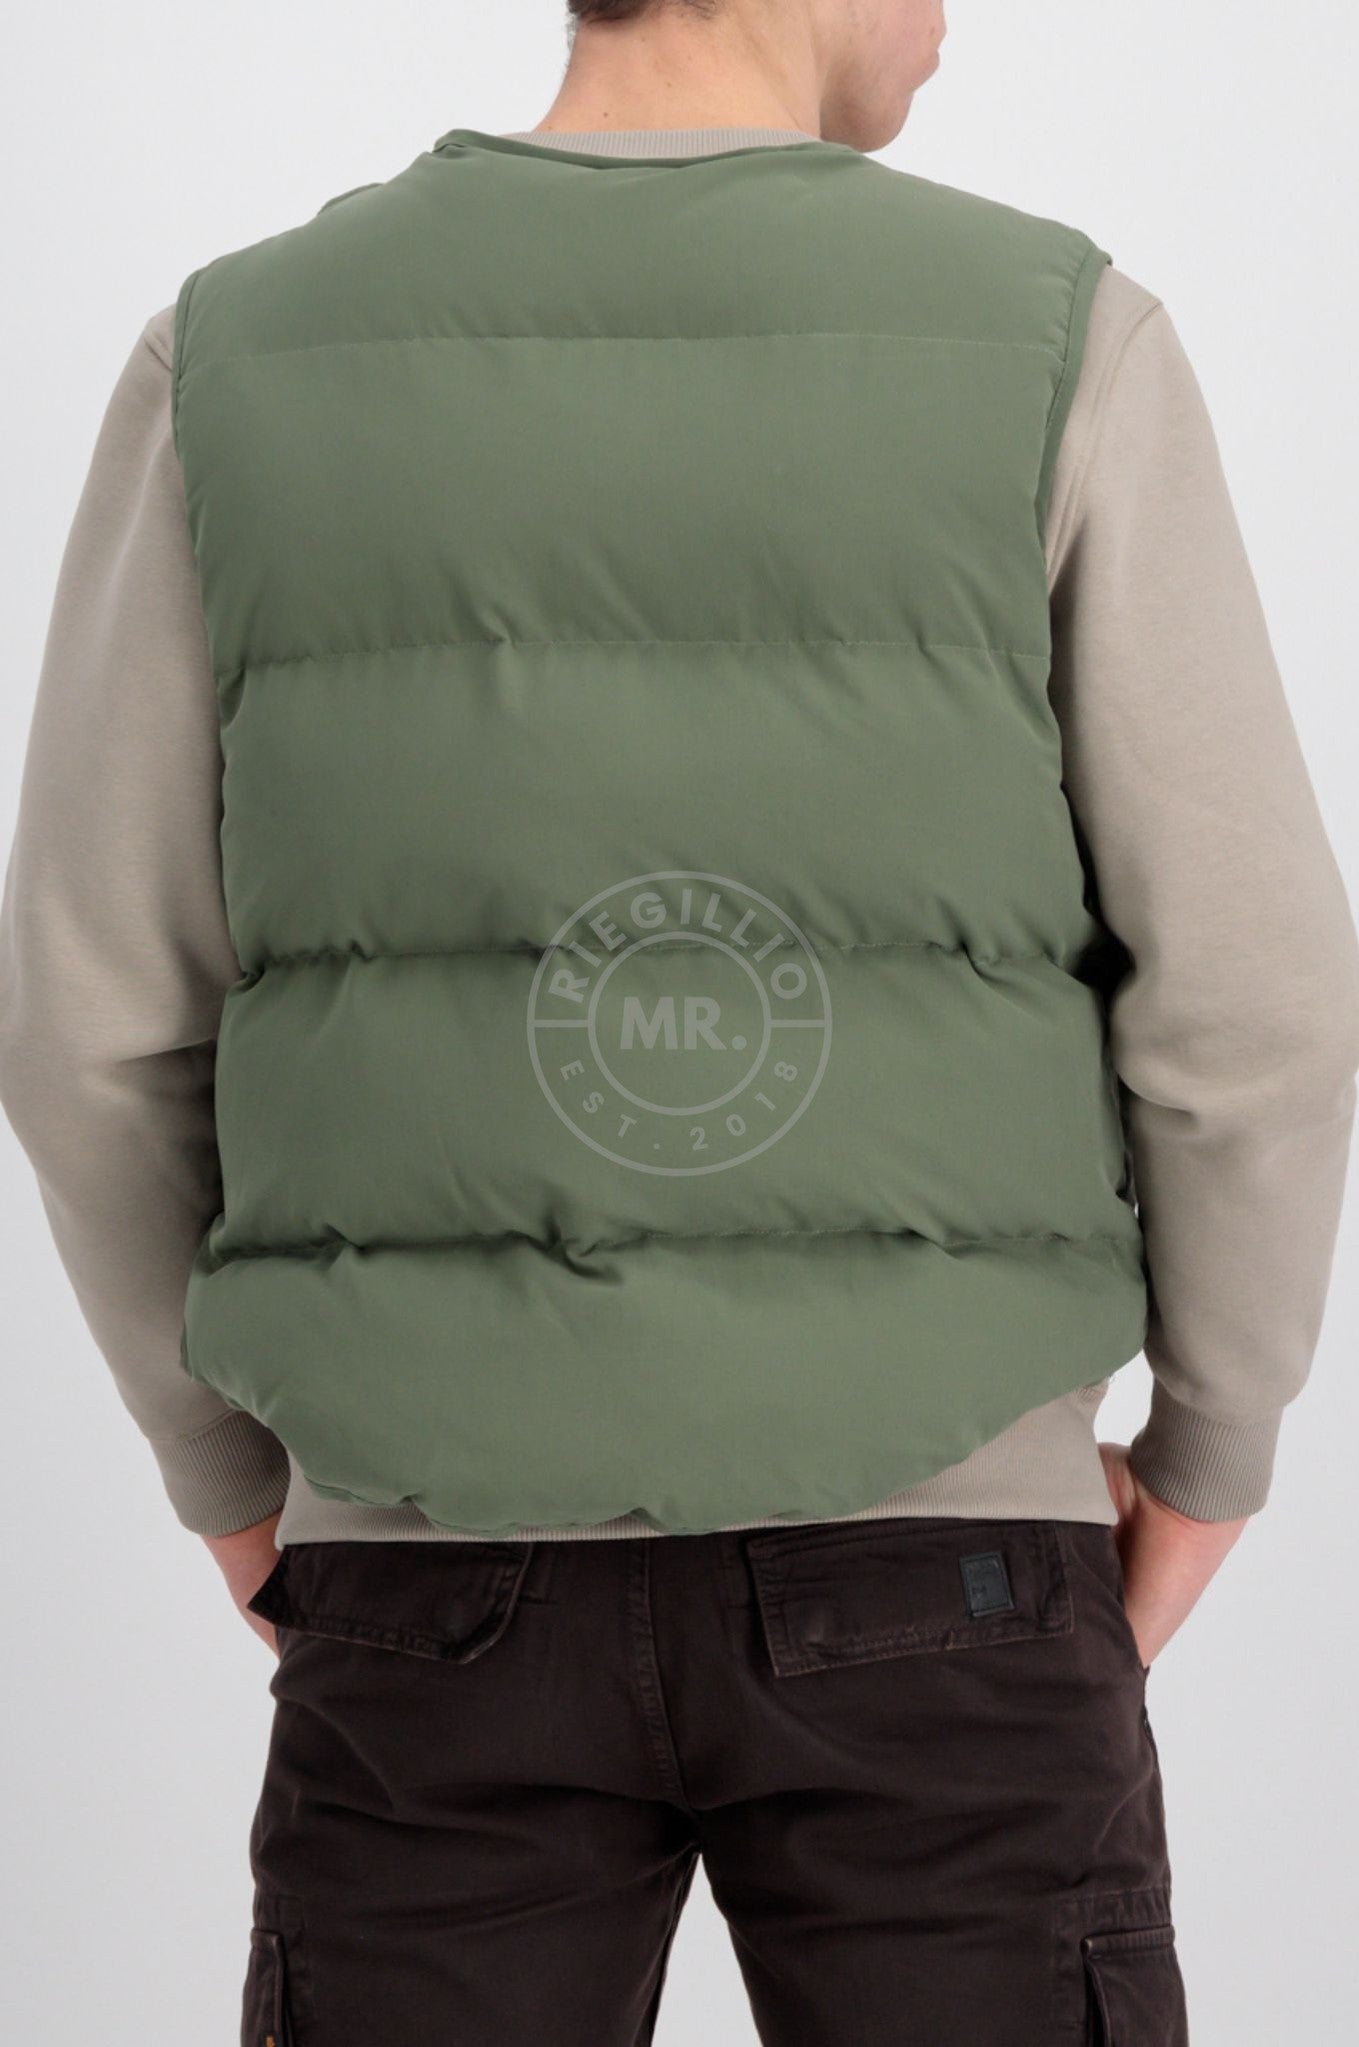 - Sage Protector Riegillio Alpha Vest at Green Industries MR. Puffer